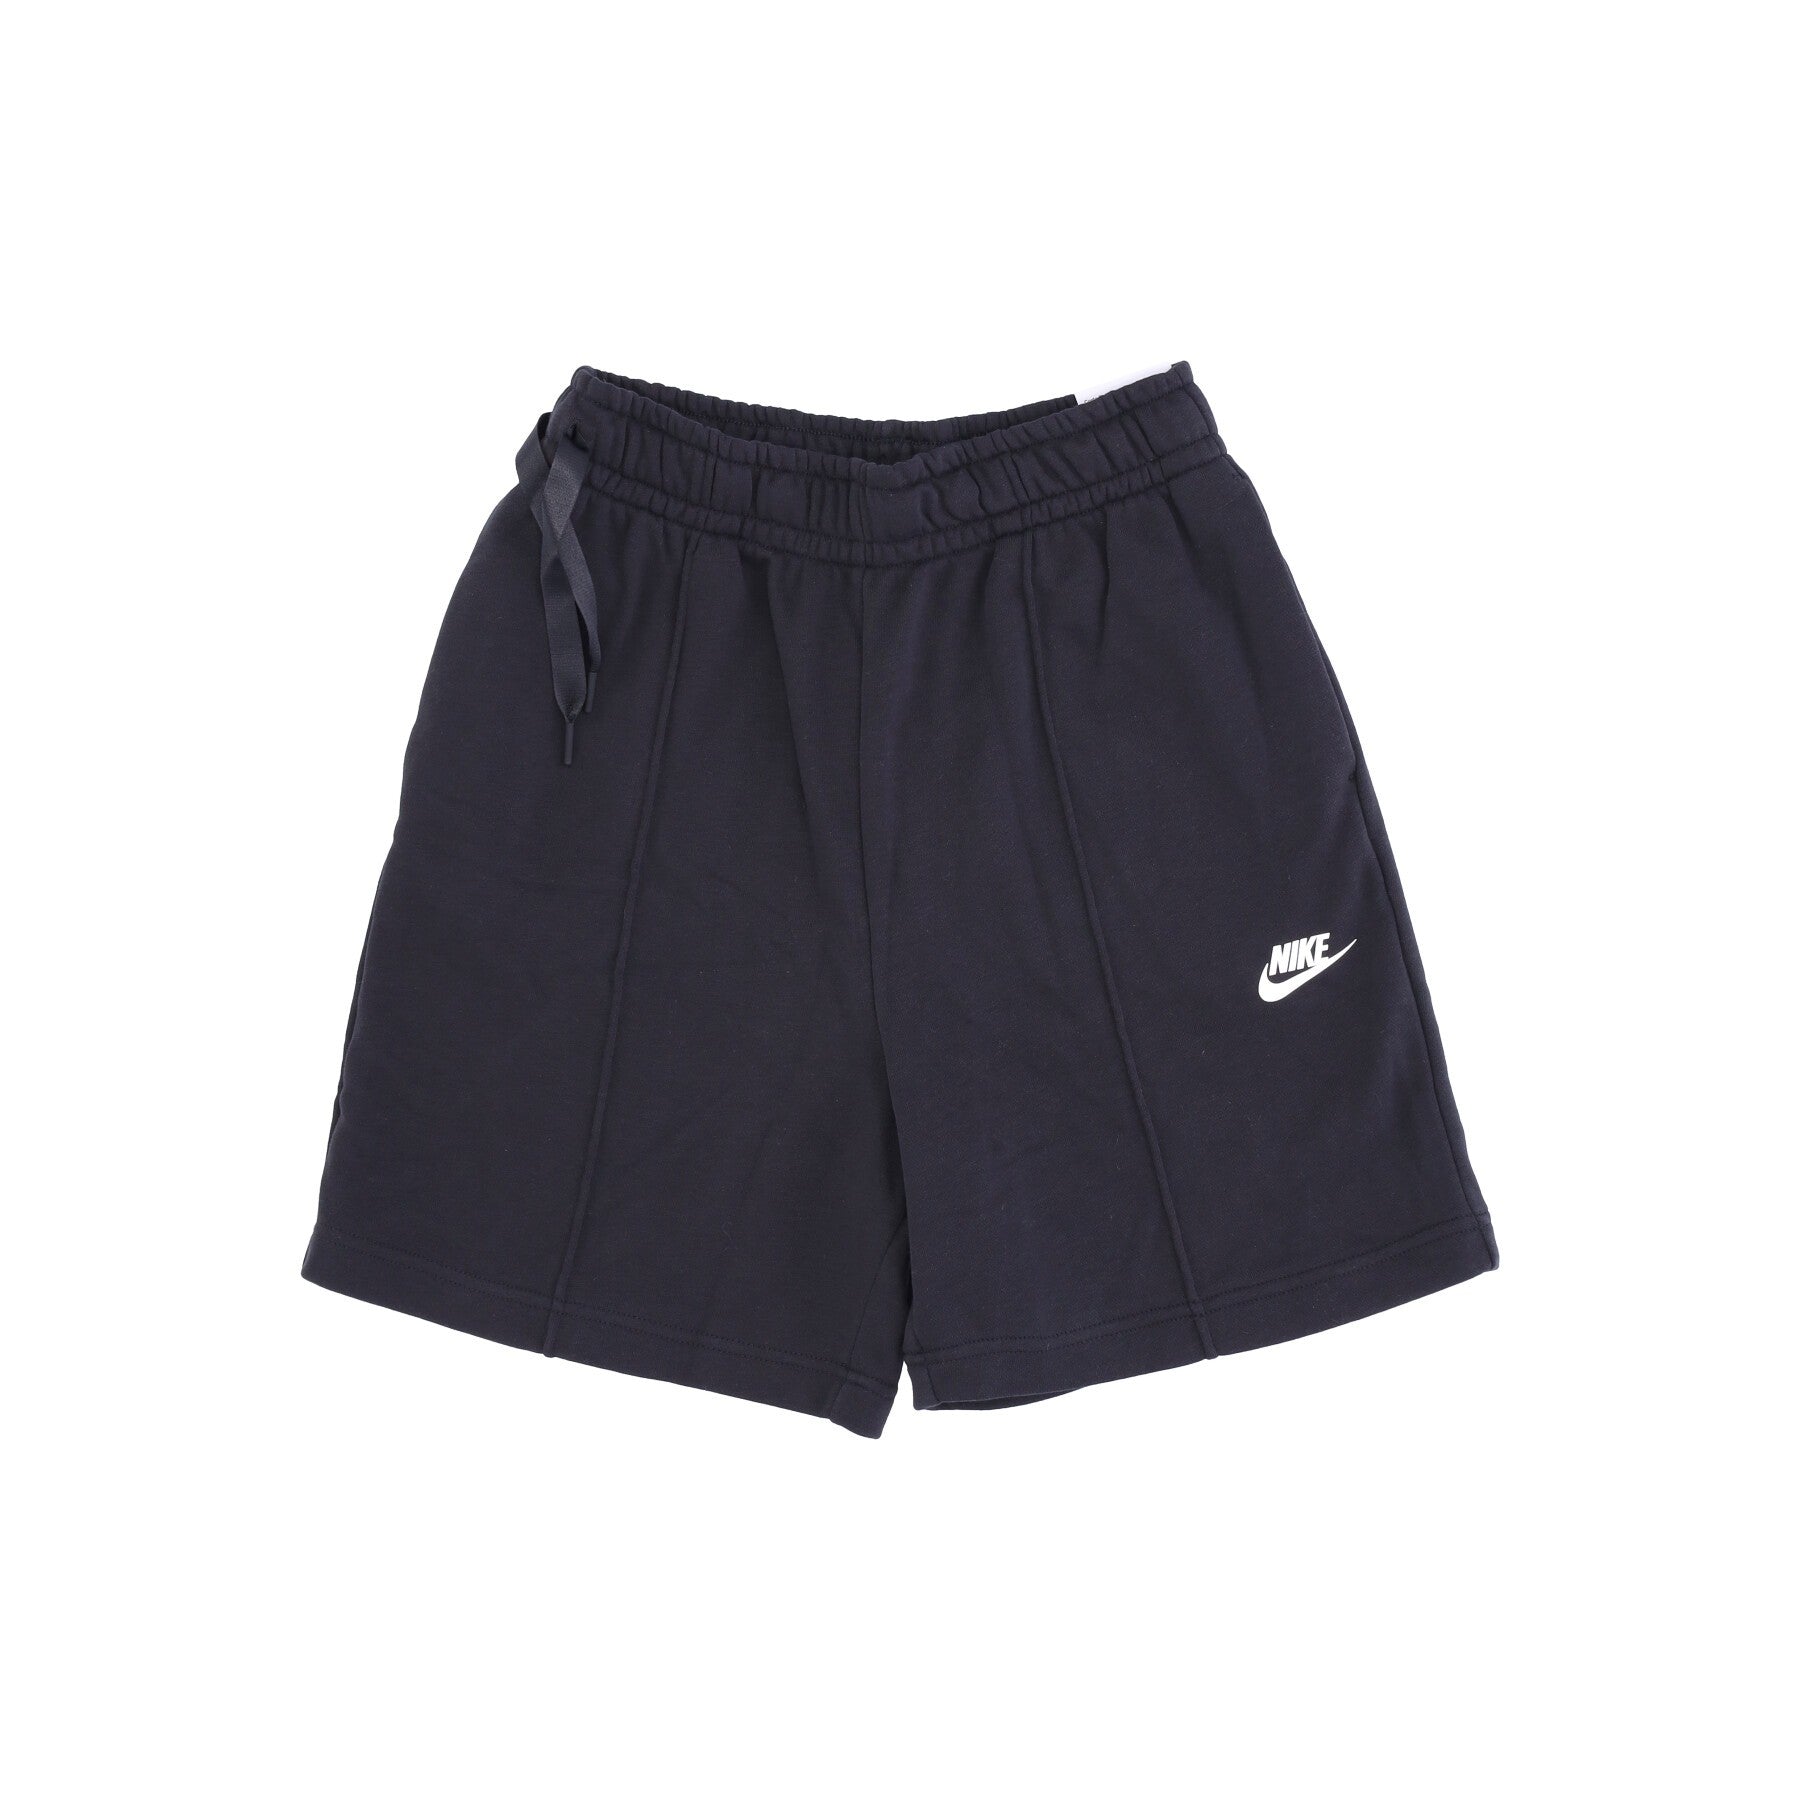 Nike, Pantalone Corto Tuta Donna Sportswear High-rise Fleece Dance Shorts, Black